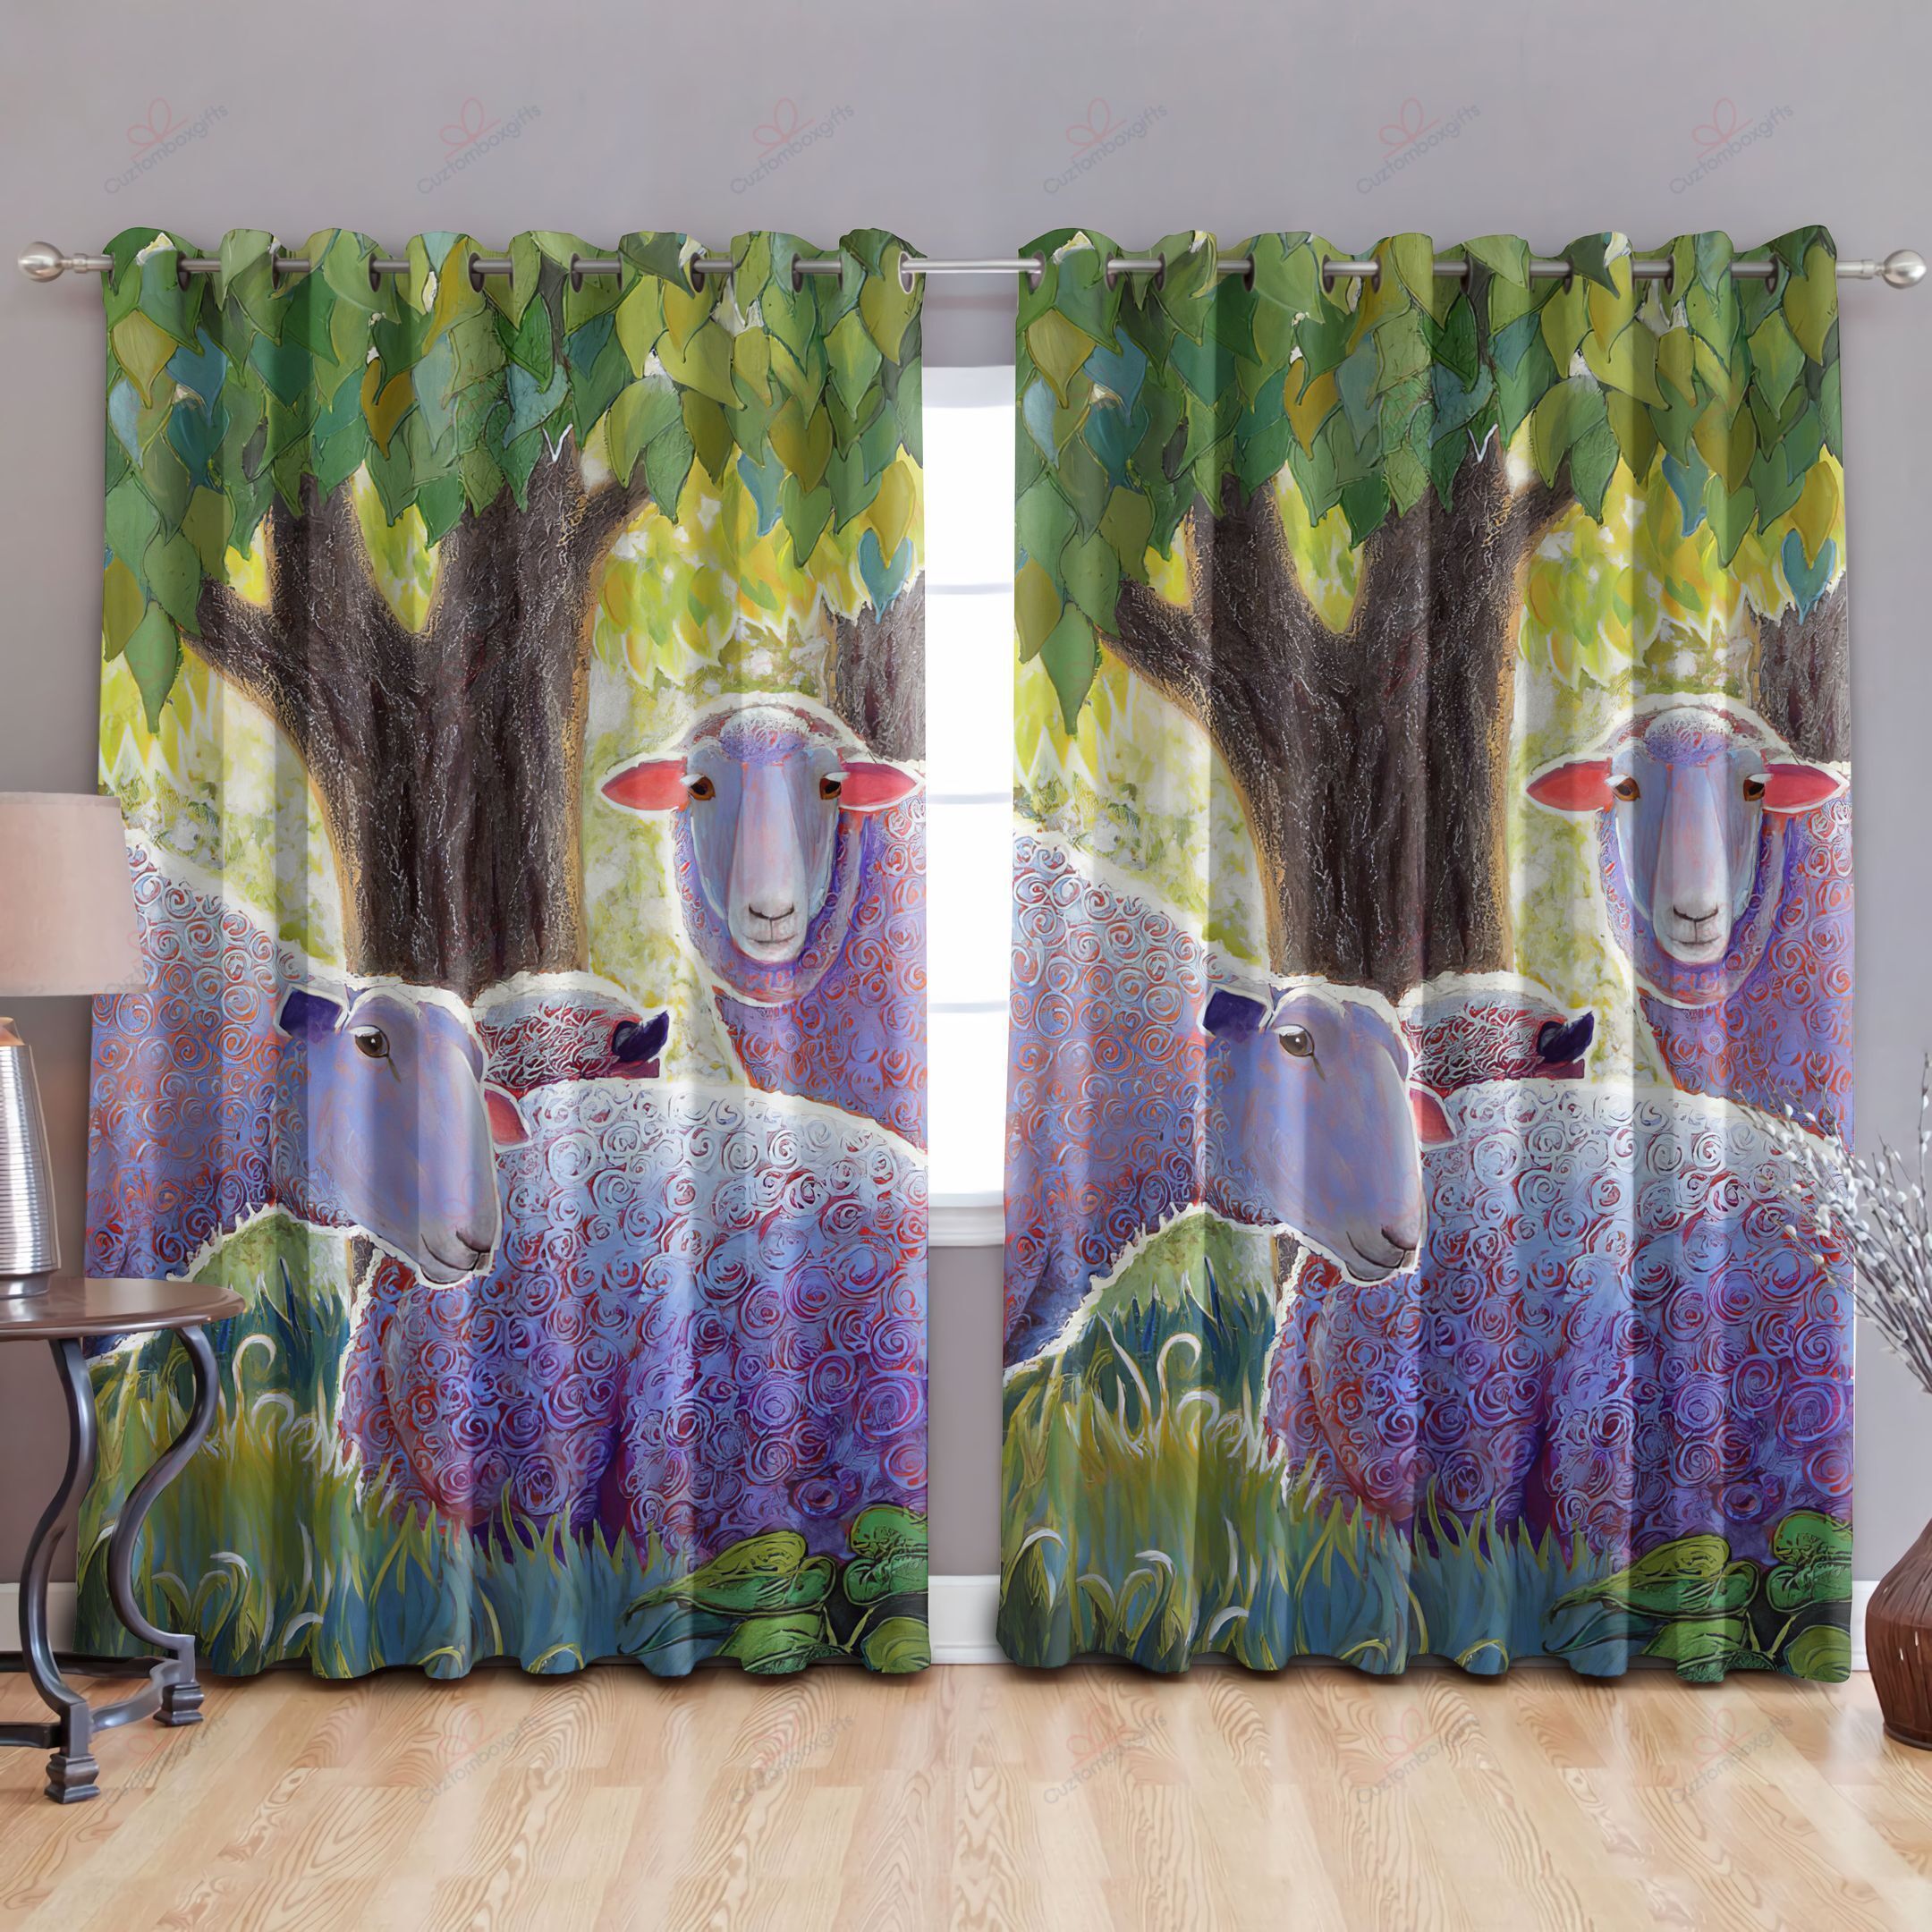 Sheep Farm Printed Window Curtain Home Decor